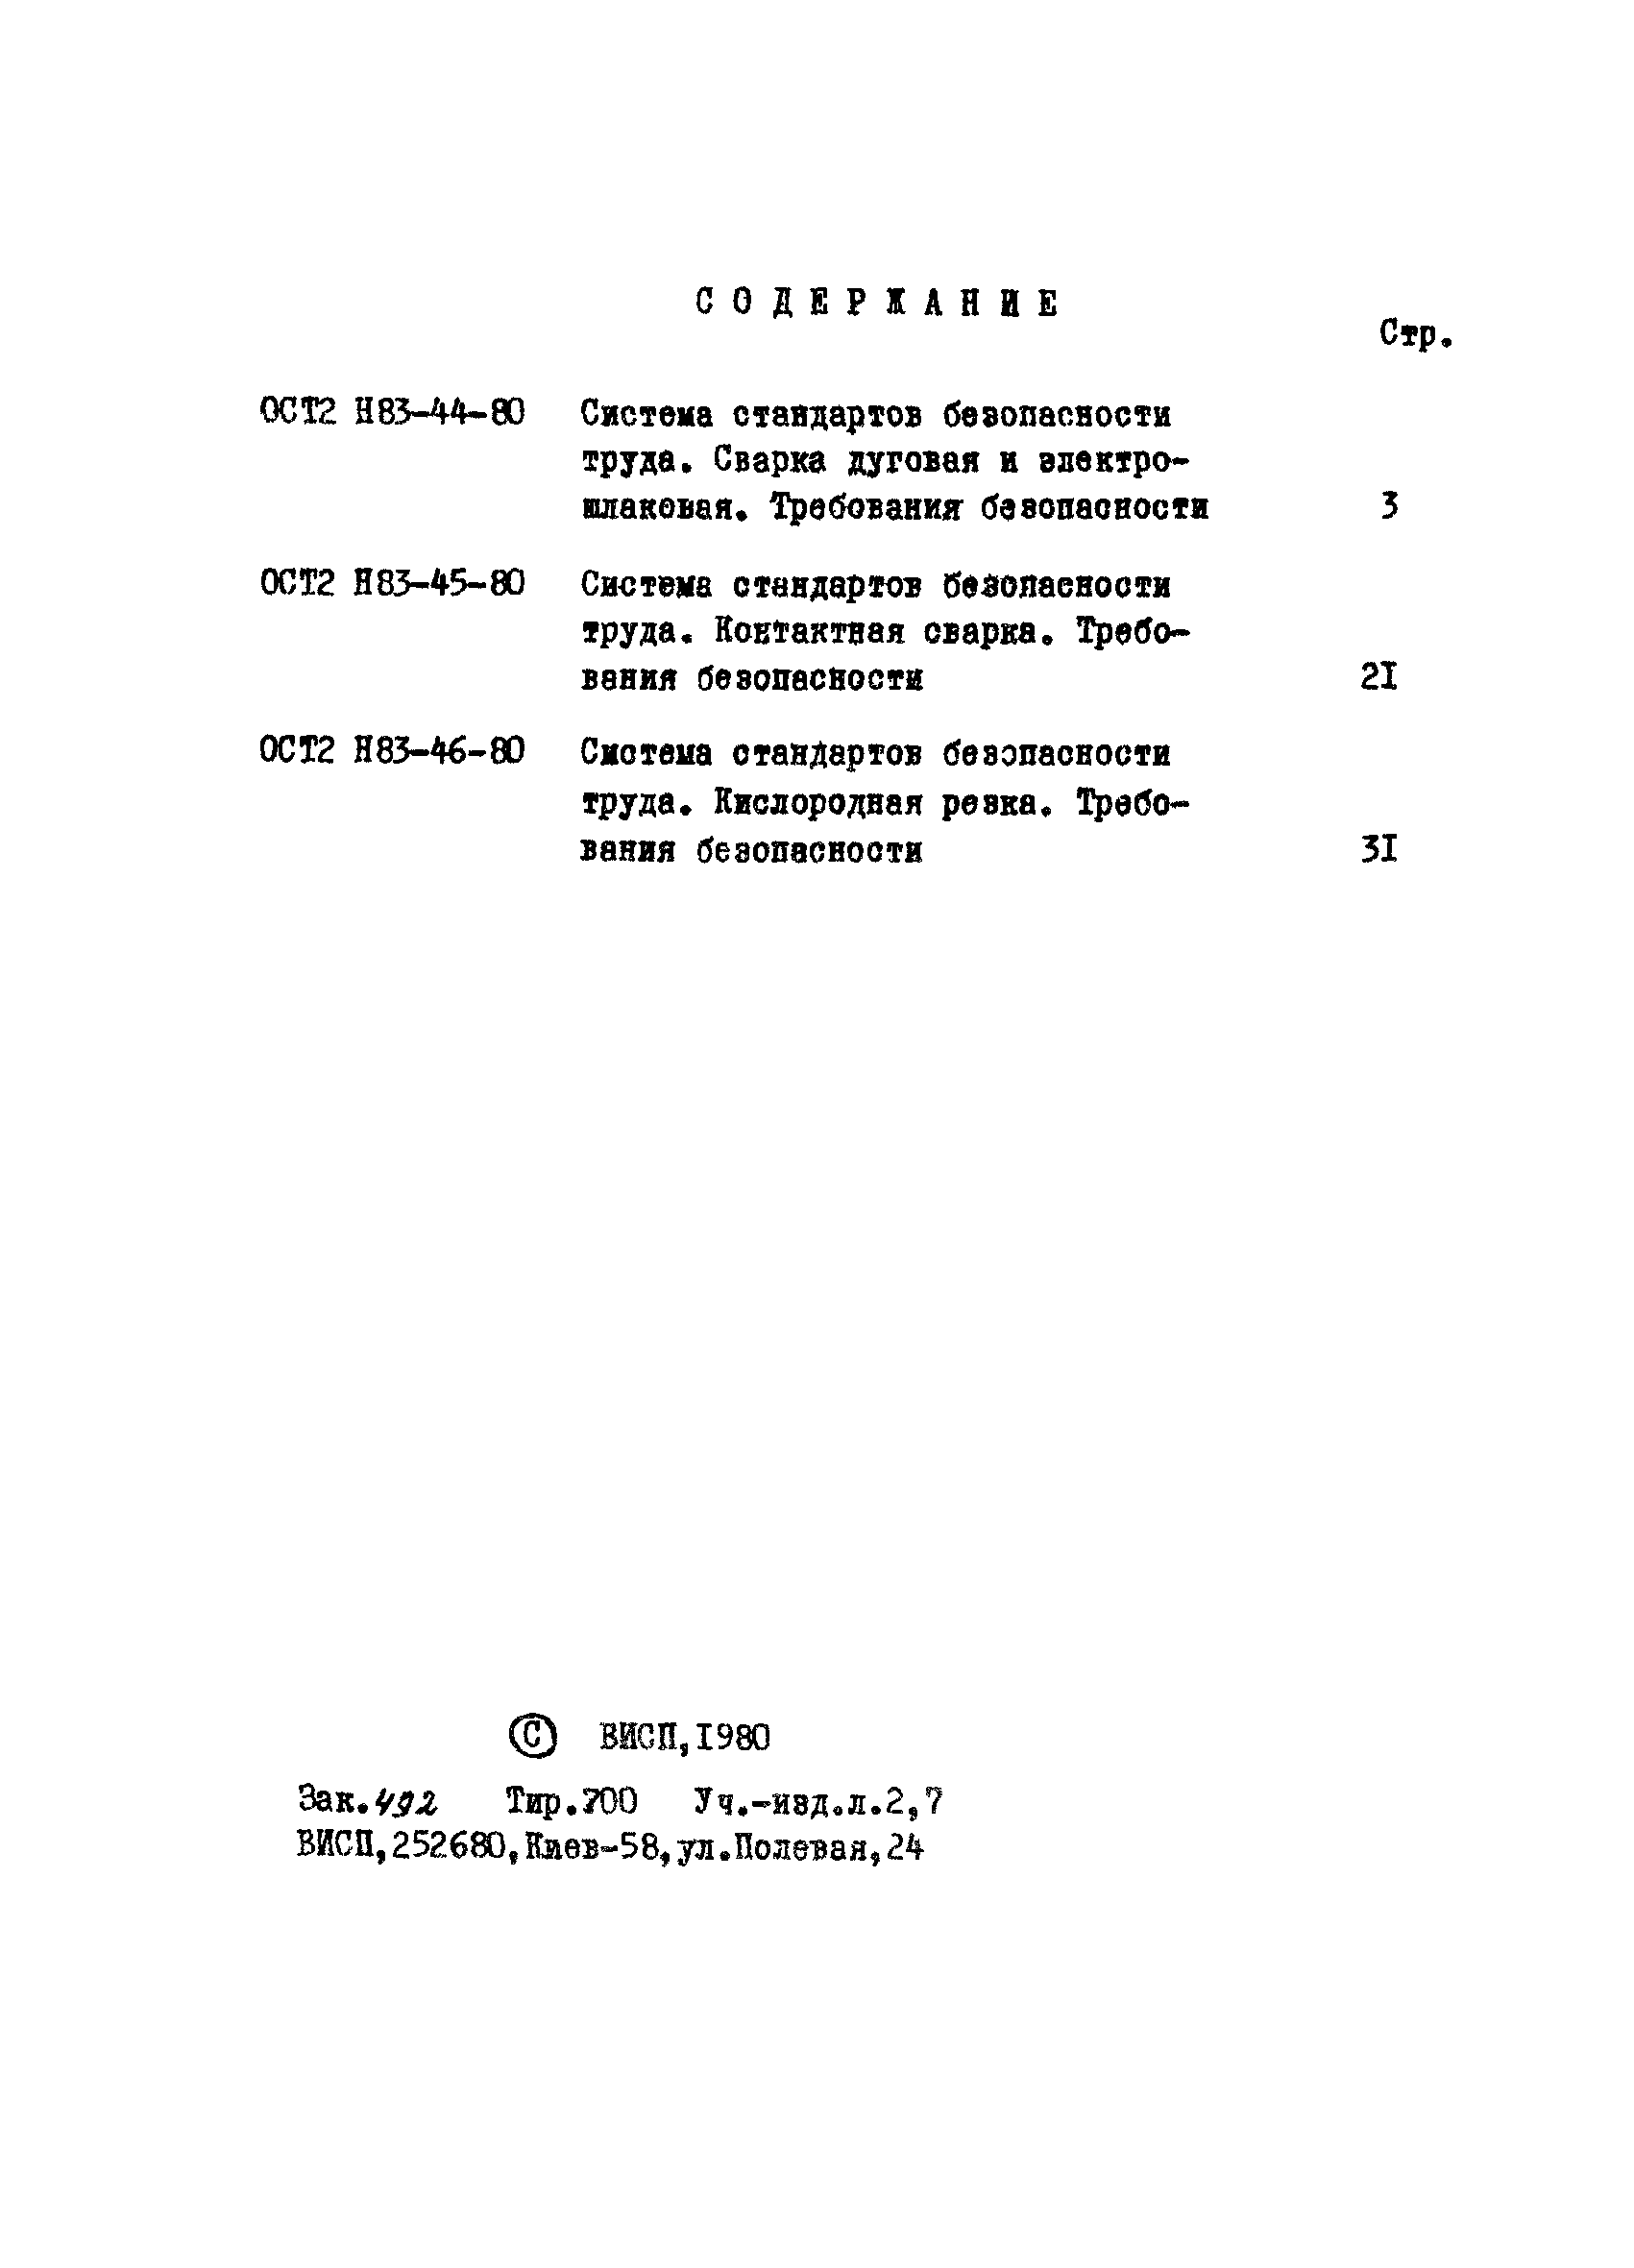 ОСТ 2 Н83-45-80